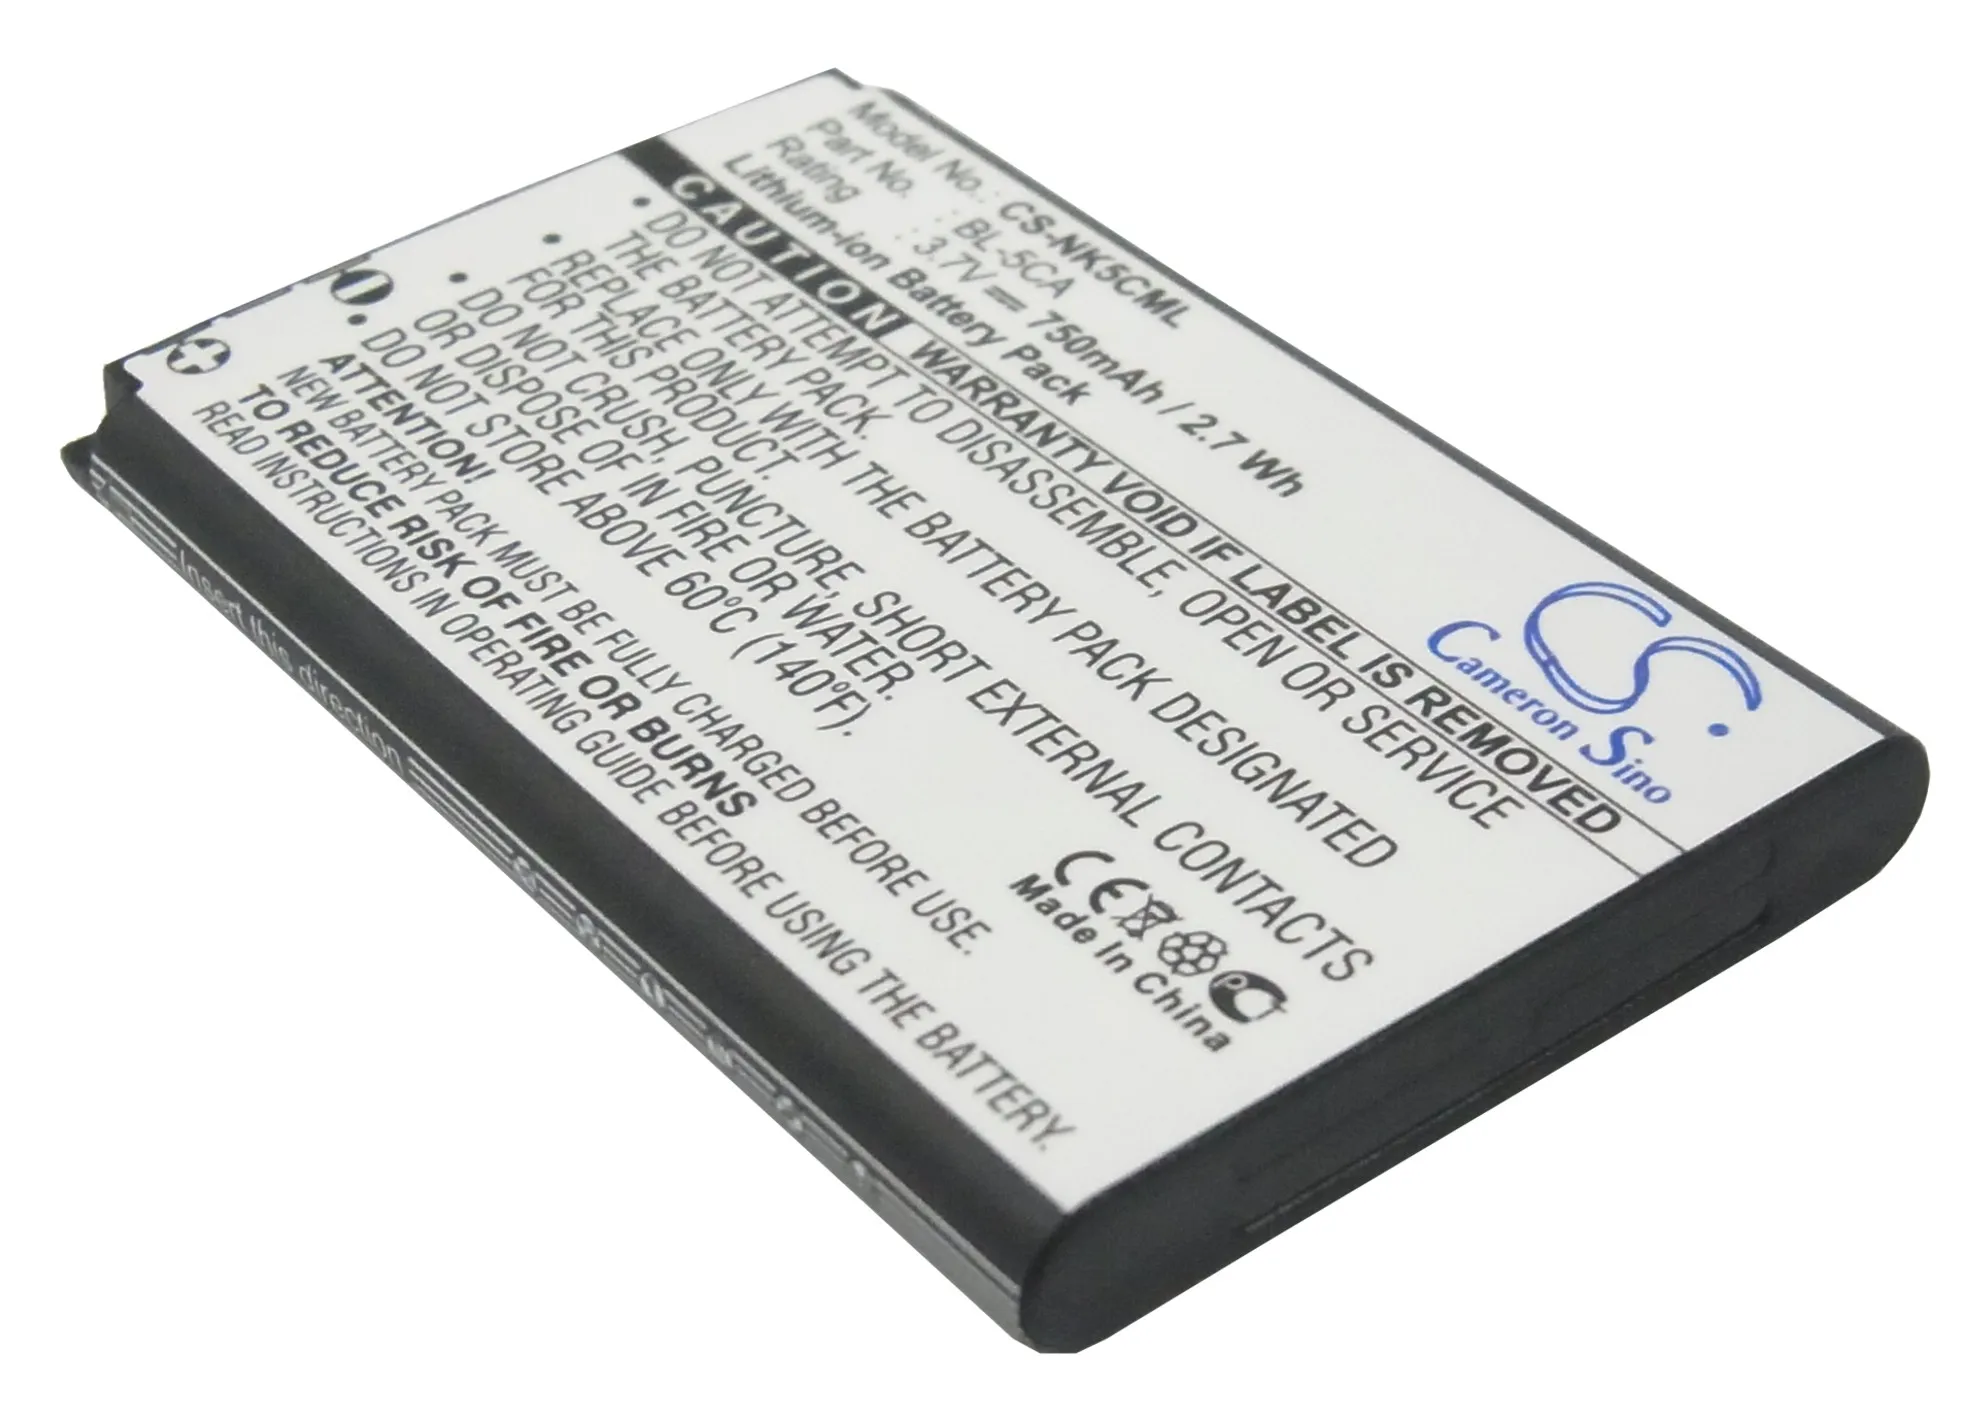 

Запасной литий-ионный аккумулятор Cameron Sino для мобильного смартфона 750 мАч для CECT K520, бесплатные инструменты